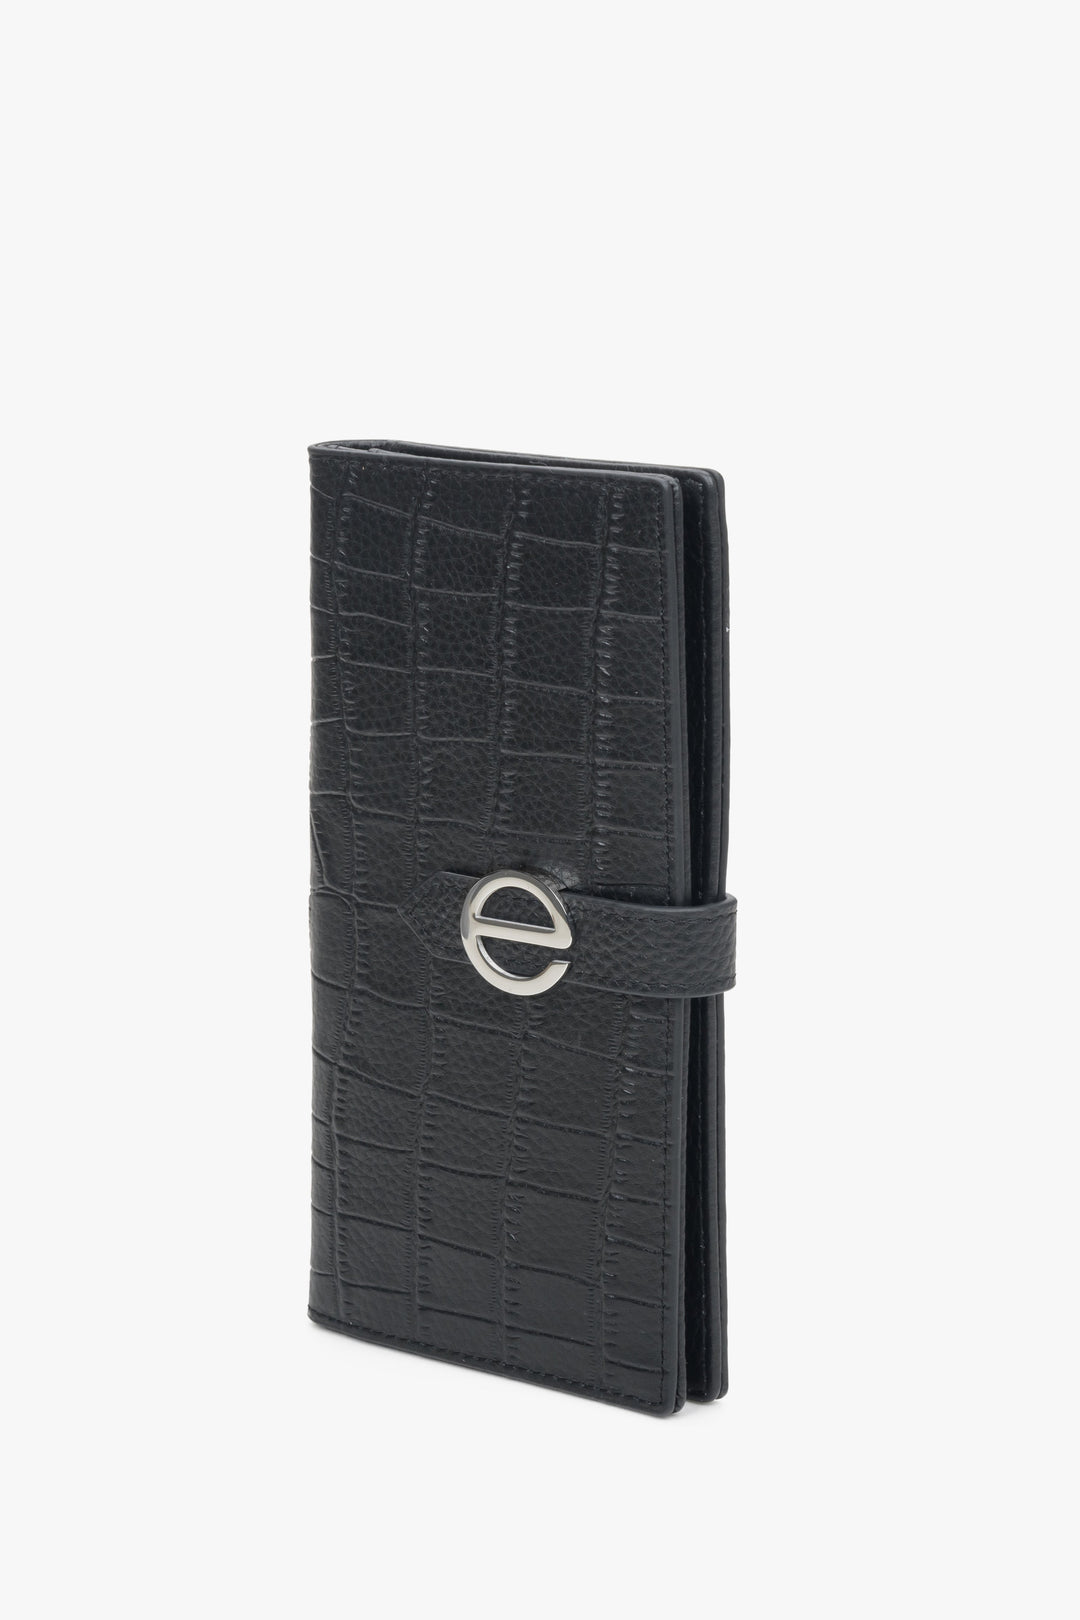 Czarny, duży portfel damski ze srebrnymi okuciami Estro.